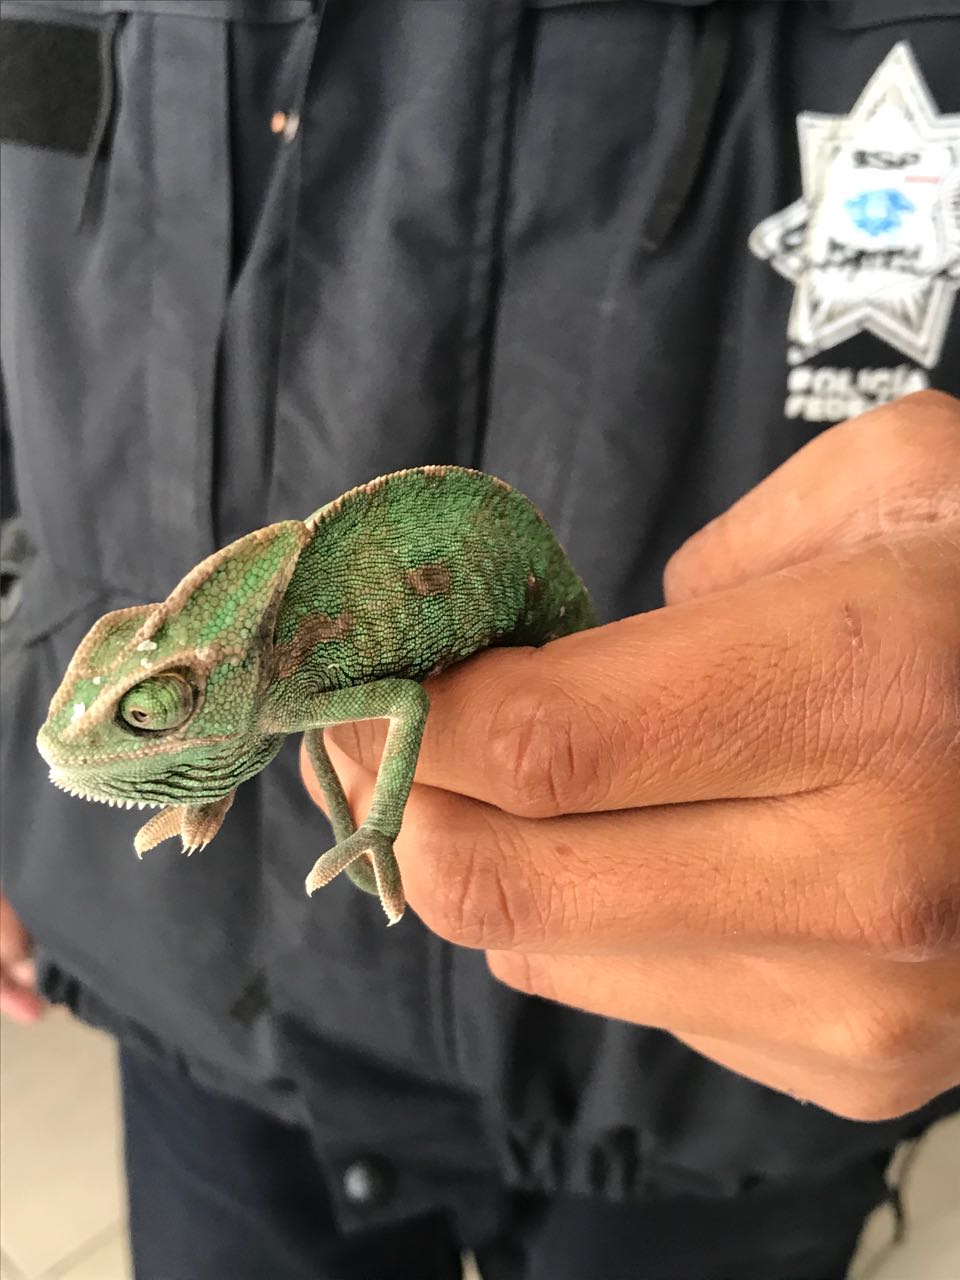 Decomisan reptiles vivos en recipientes de plástico, en San Luis Potosí